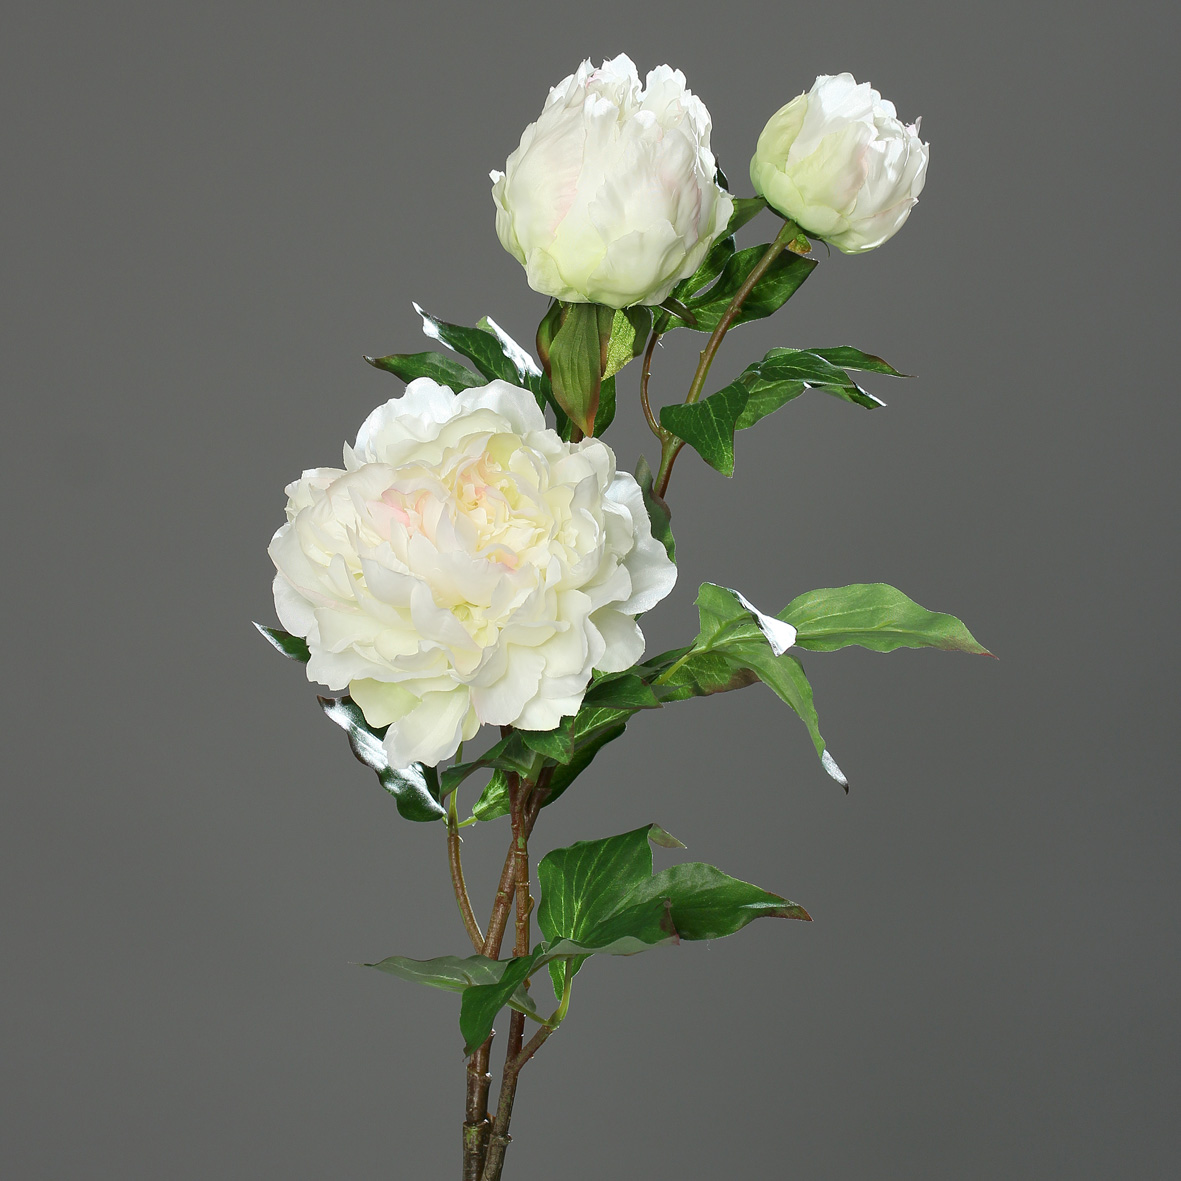 Große Pfingstrose mit 3 Blüten 82cm weiß-creme DP Kunstblumen Seidenblumen künstliche Blumen Päonie